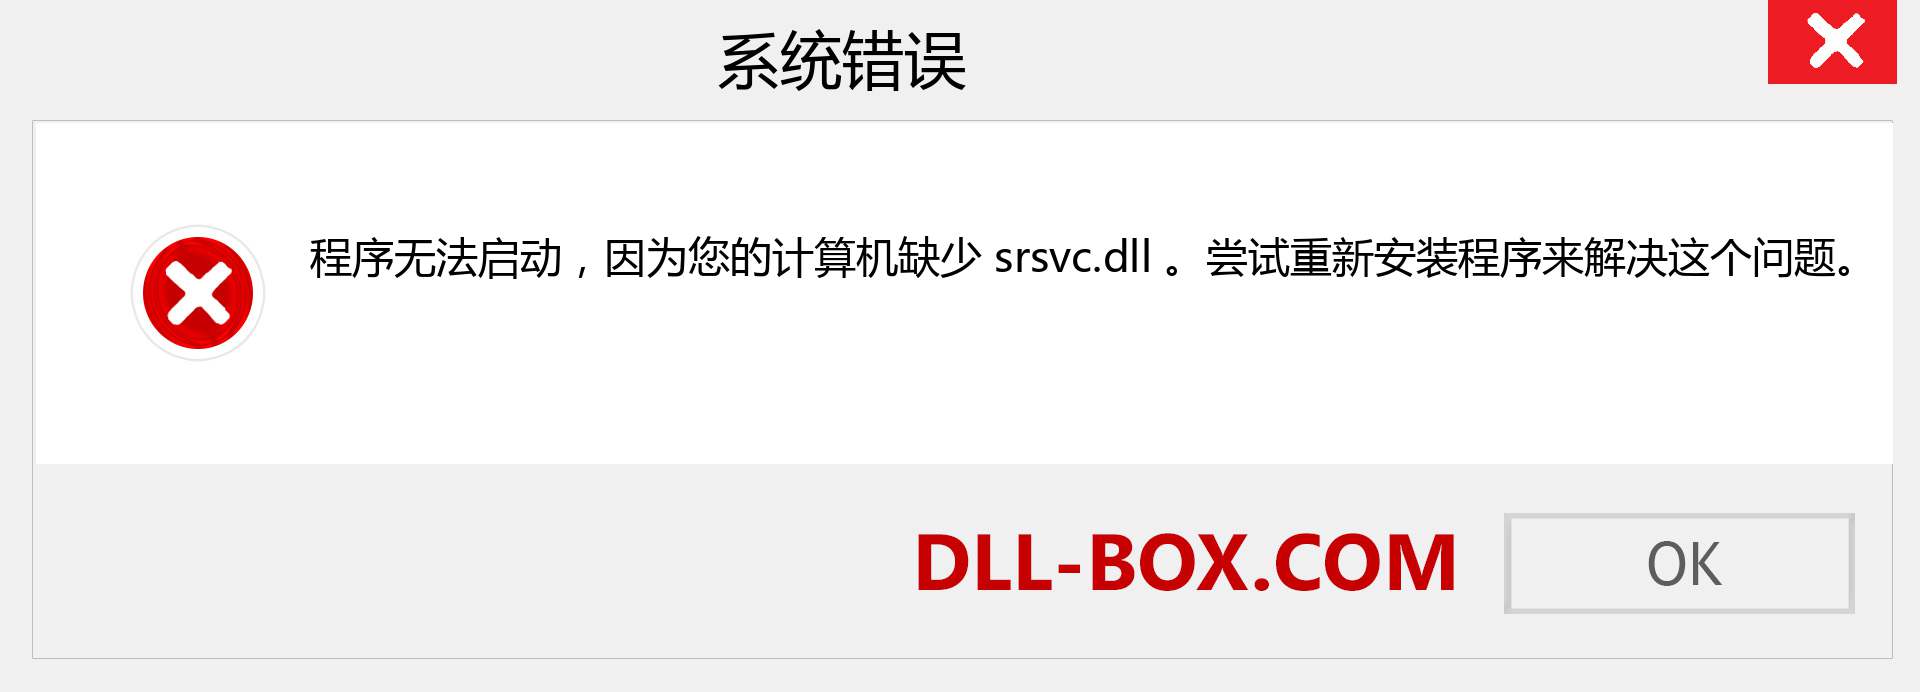 srsvc.dll 文件丢失？。 适用于 Windows 7、8、10 的下载 - 修复 Windows、照片、图像上的 srsvc dll 丢失错误